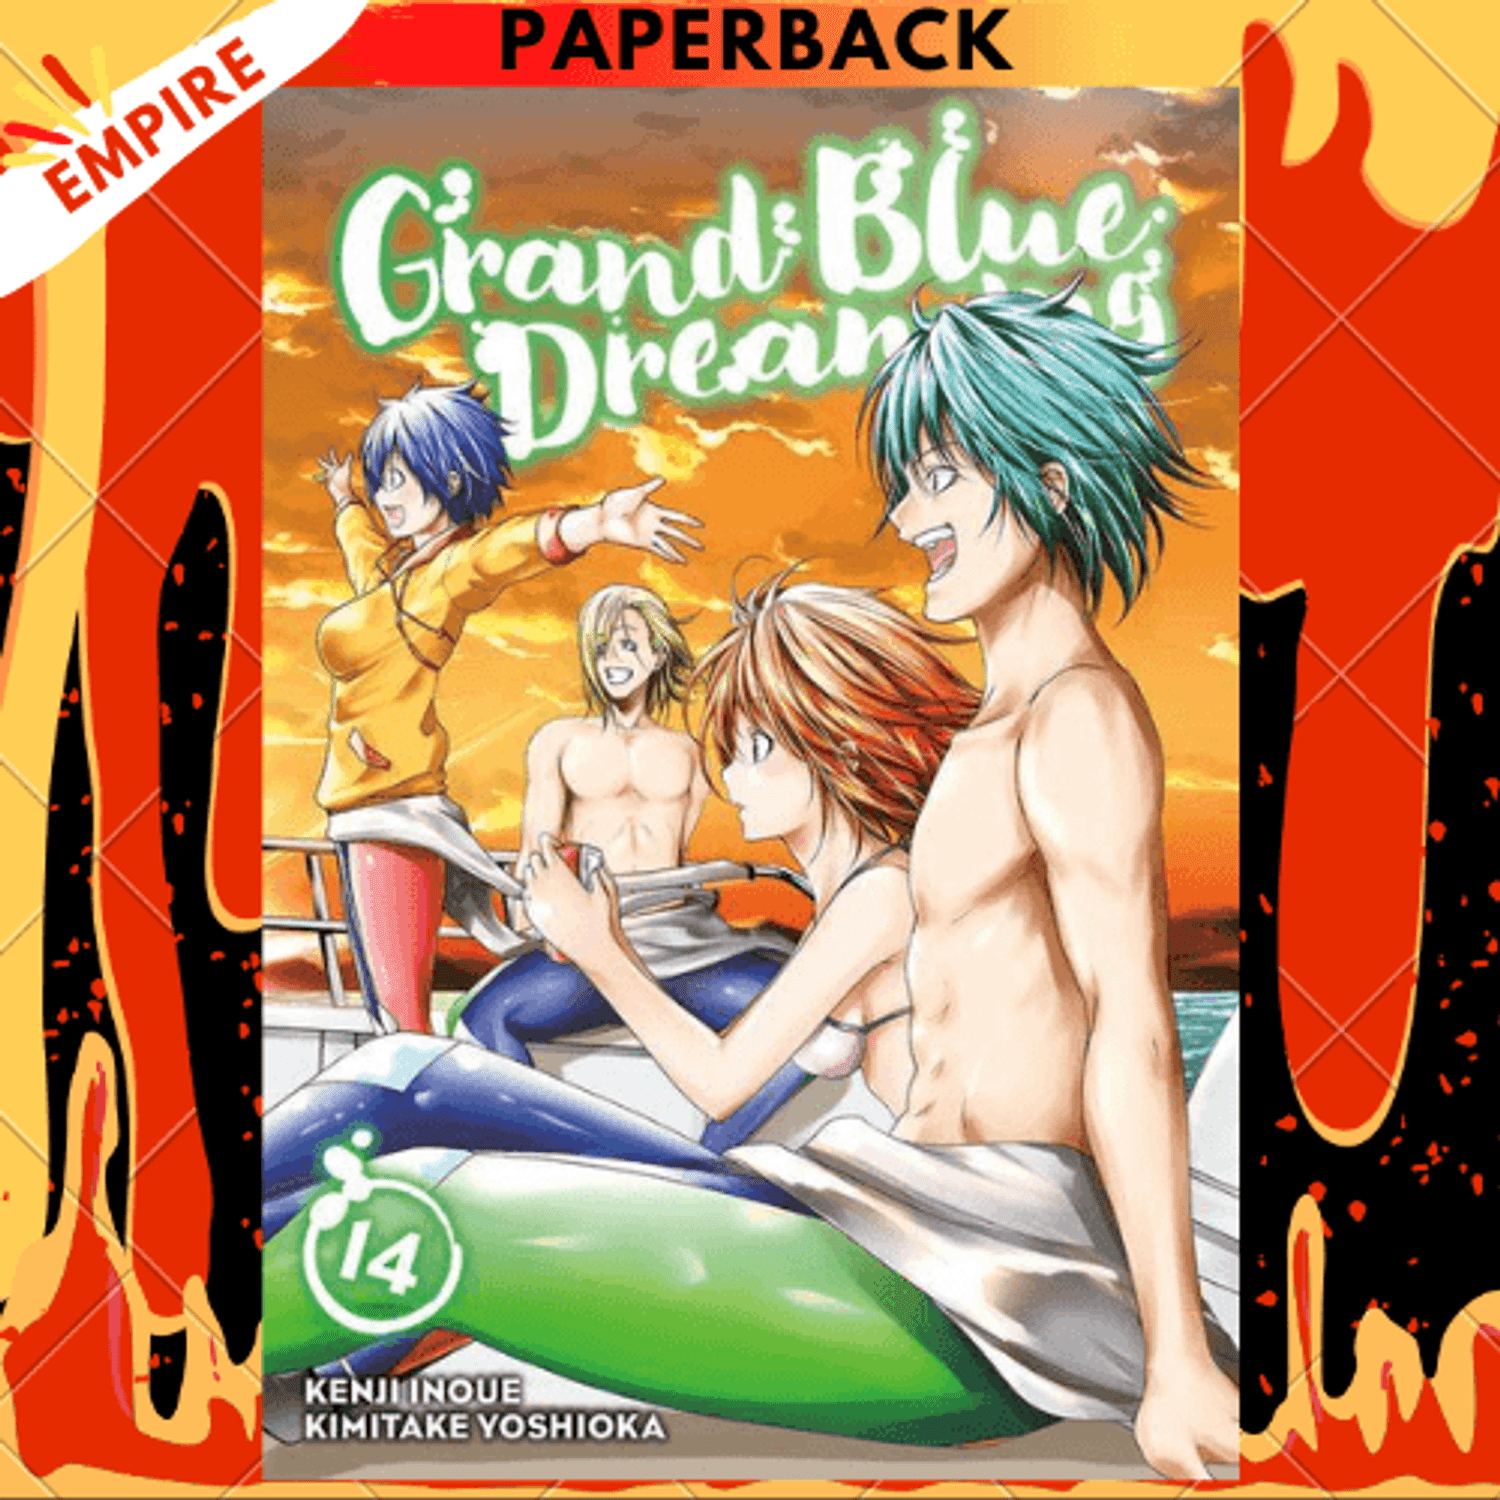 Mangás Brasil - Chegando ao Japão Grand Blue #14 Grand Blue também  conhecido como Grand Blue Dreaming, é uma série de mangá japonesa escrita  por Kenji Inoue e ilustrada por Kimitake Yoshioka.